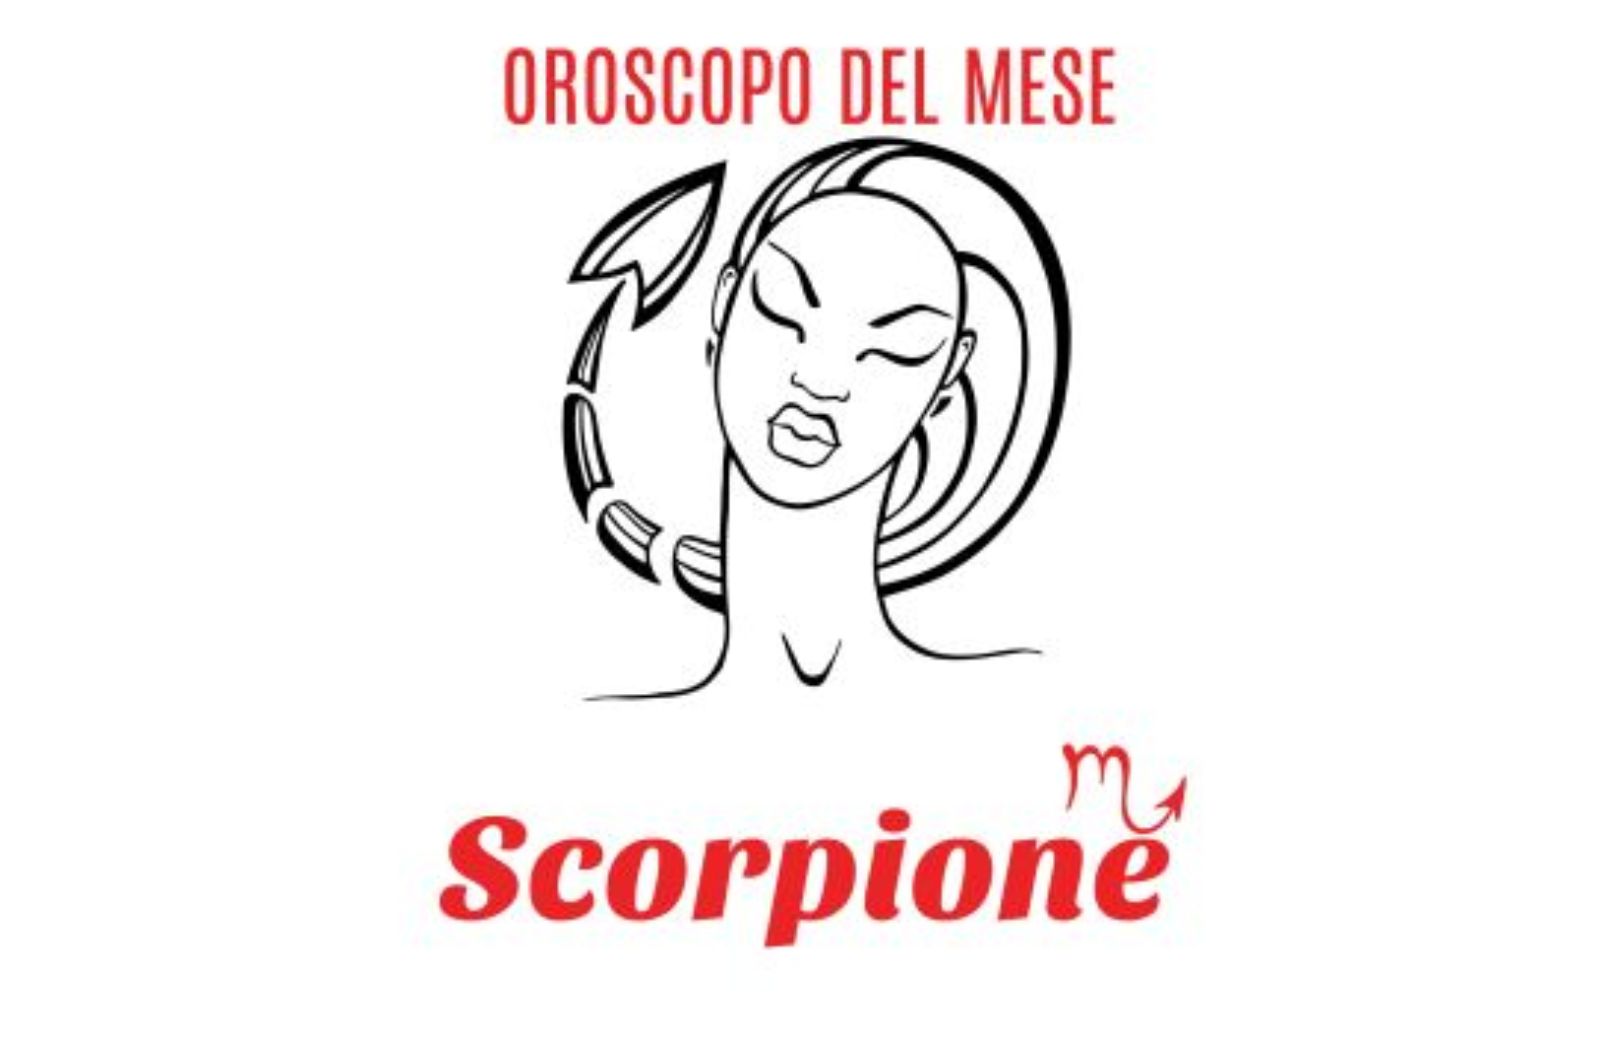 Oroscopo del mese: Scorpione - novembre 2019